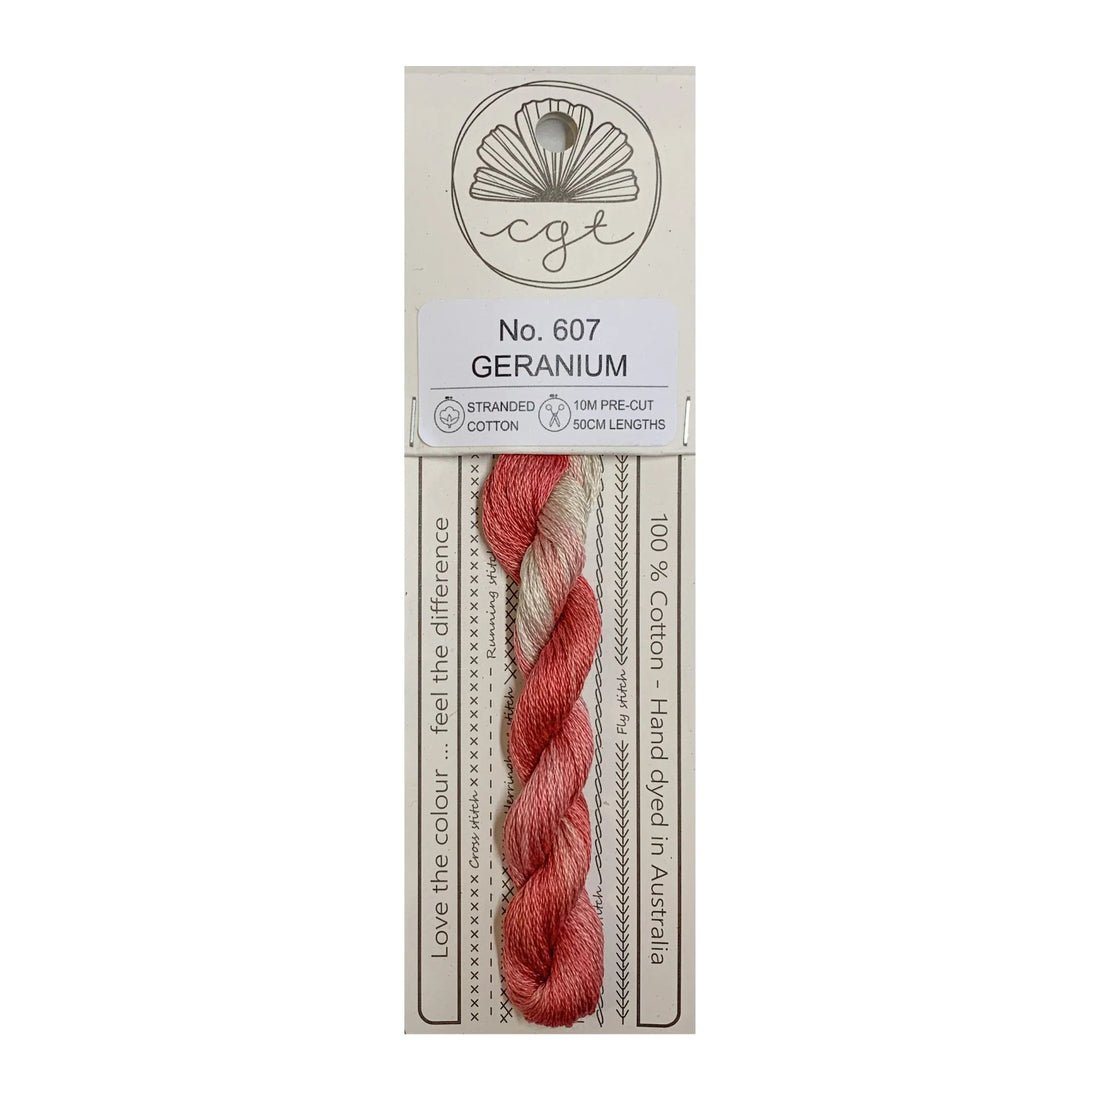 607 Geranium - Cottage Garden Threads